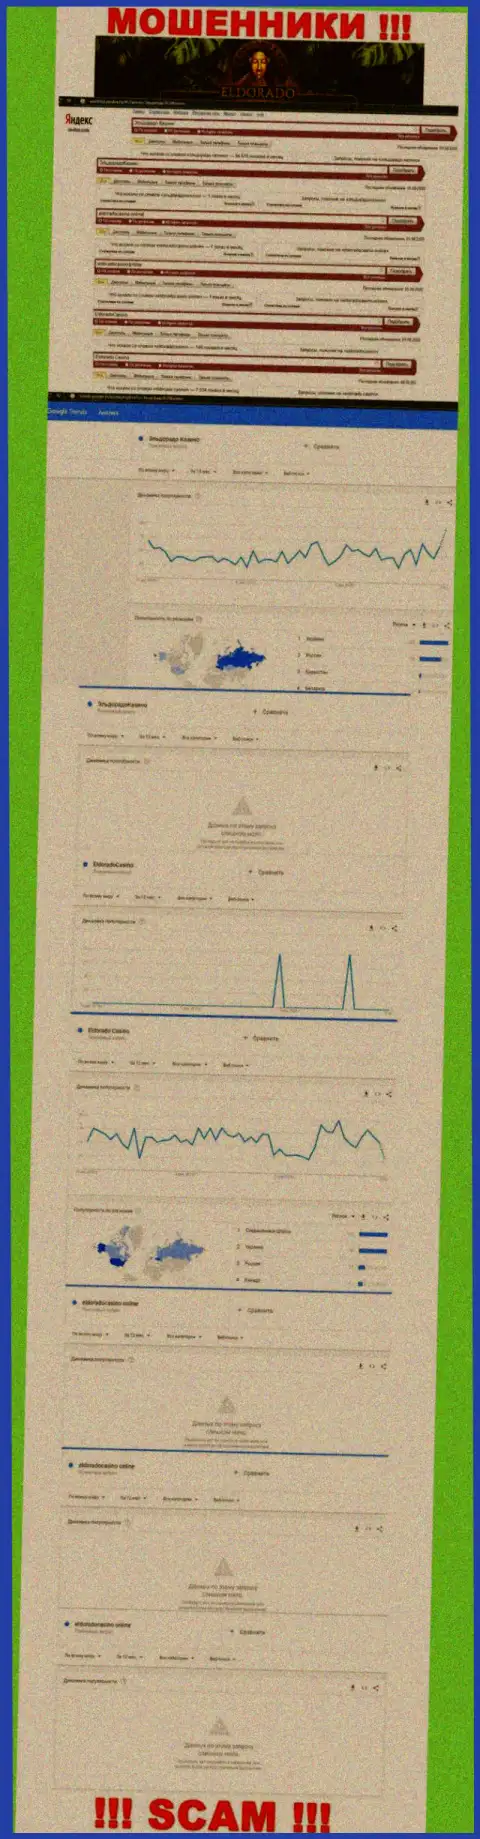 Статистические показатели количества обзоров сведений об мошенниках ЭльдорадоКазино в сети internet